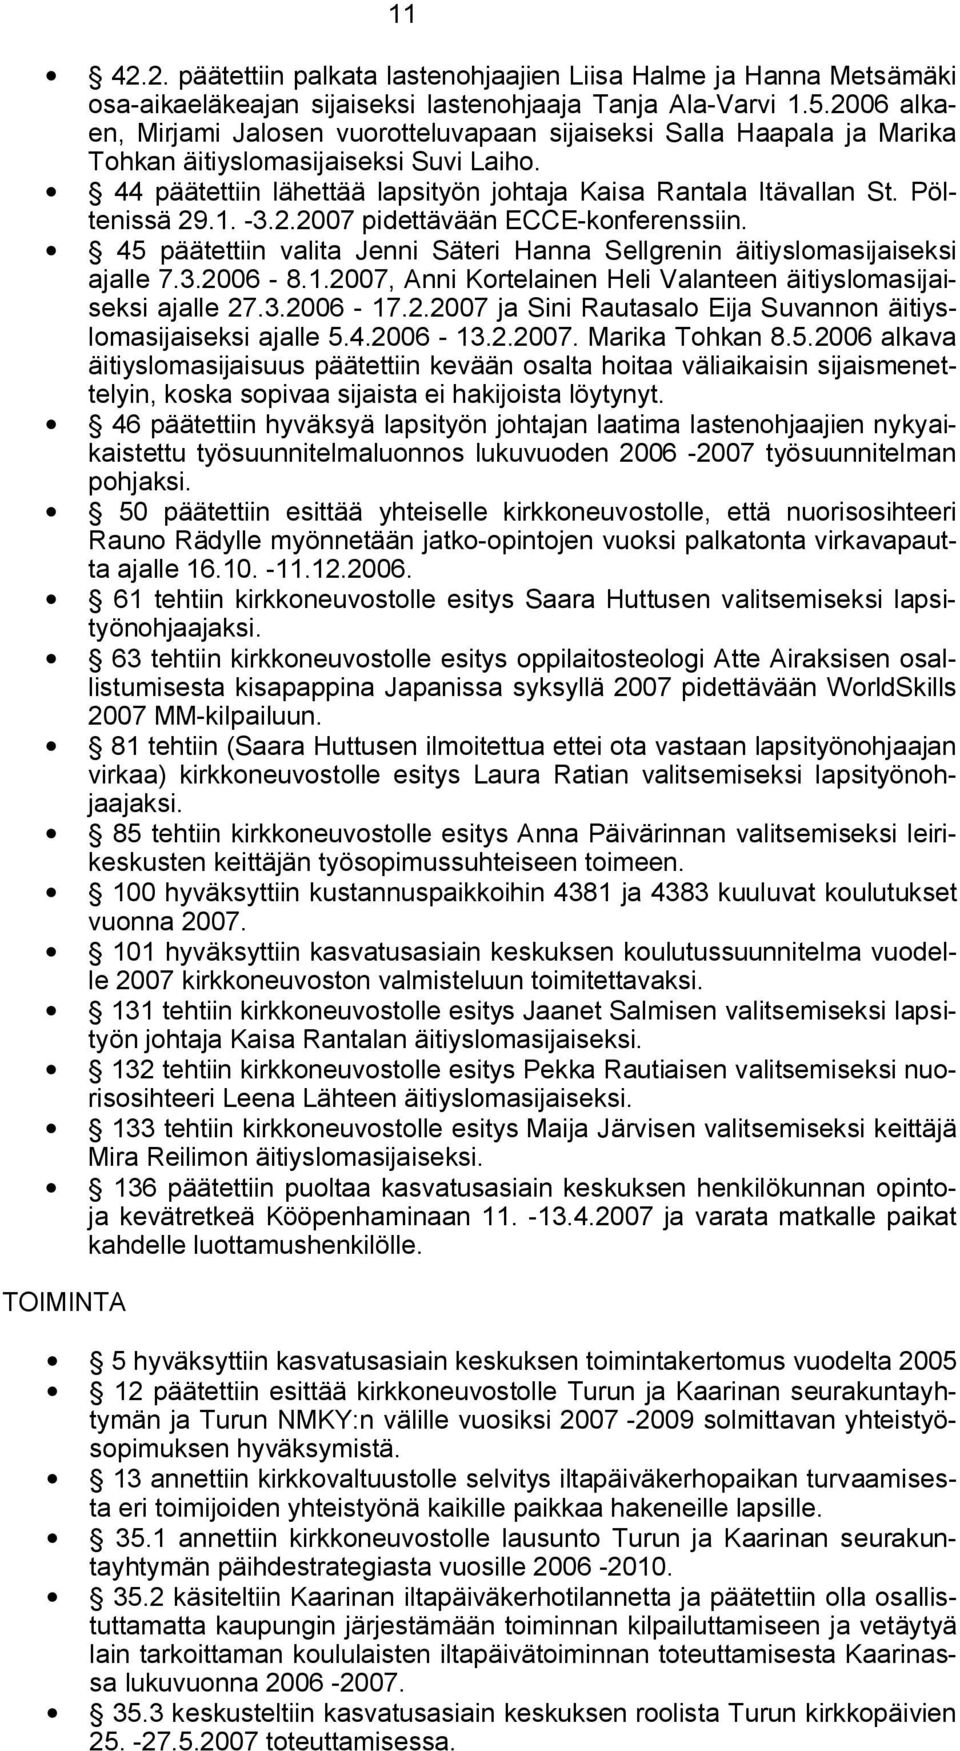 Pöltenissä 29.1. 3.2.2007 pidettävään ECCE konferenssiin. 45 päätettiin valita Jenni Säteri Hanna Sellgrenin äitiyslomasijaiseksi ajalle 7.3.2006 8.1.2007, Anni Kortelainen Heli Valanteen äitiyslomasijaiseksi ajalle 27.